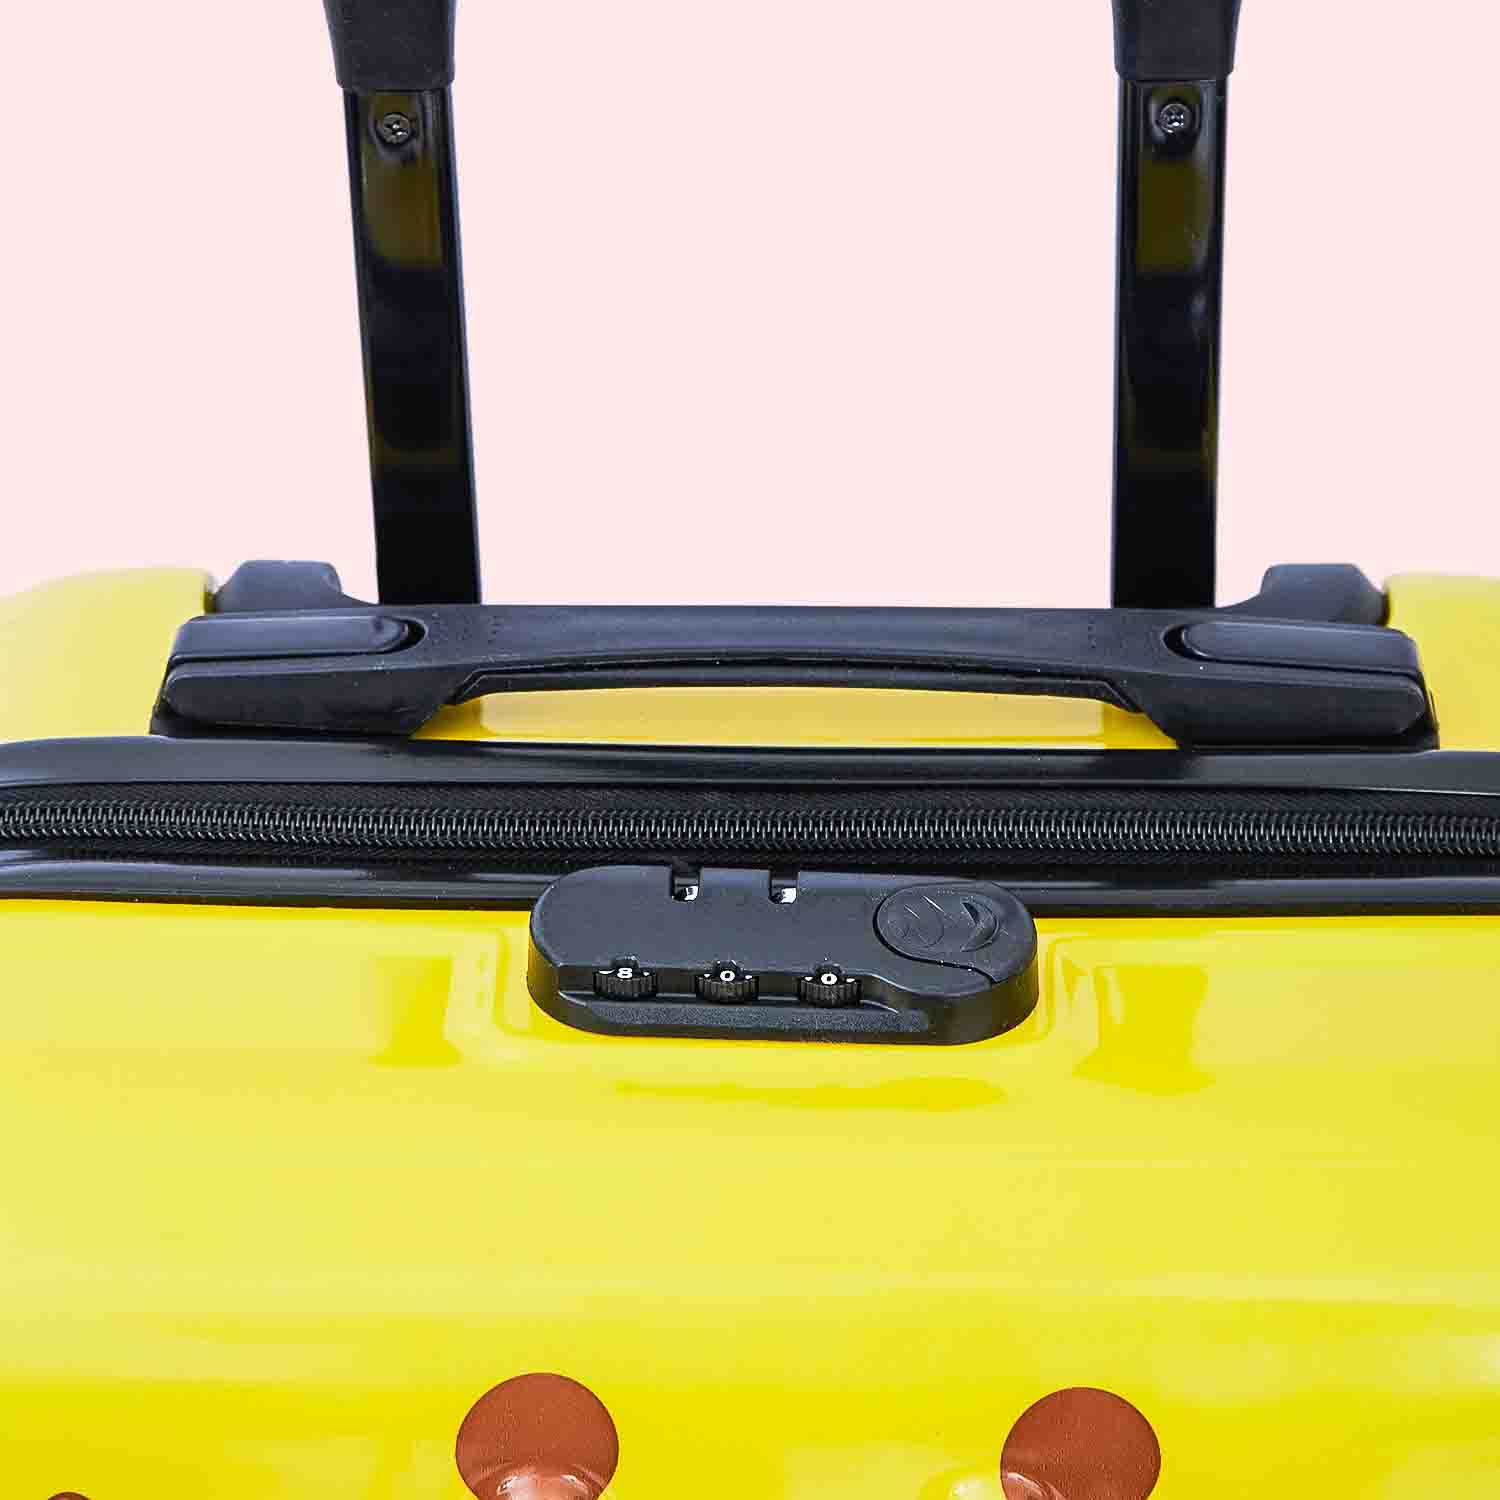 Animal 3D Luggage Trolley Bag - Giraffe